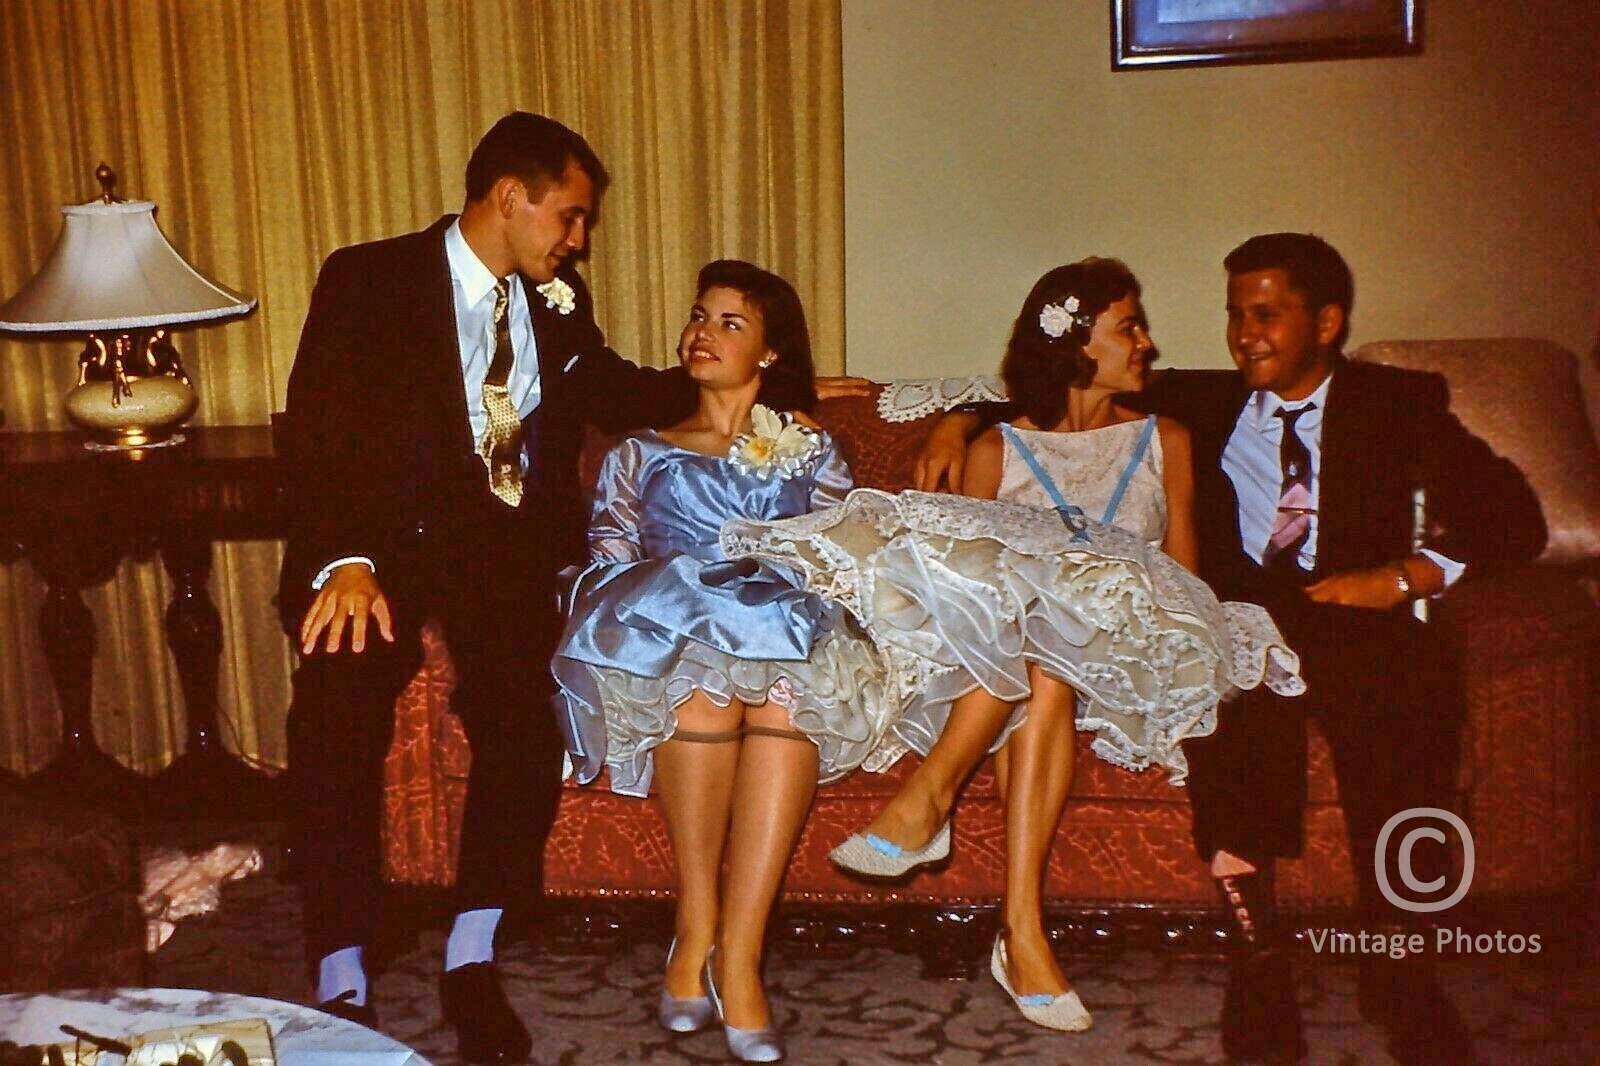 1950s American Fashion - 2 Women + 2 Men Party